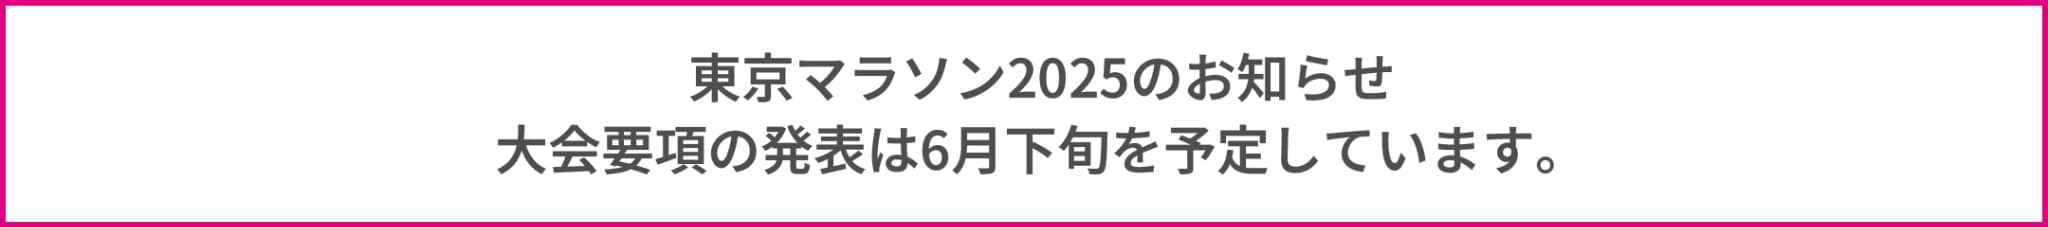 東京マラソン2025のお知らせ 大会要項の発表は6月下旬を予定しています。